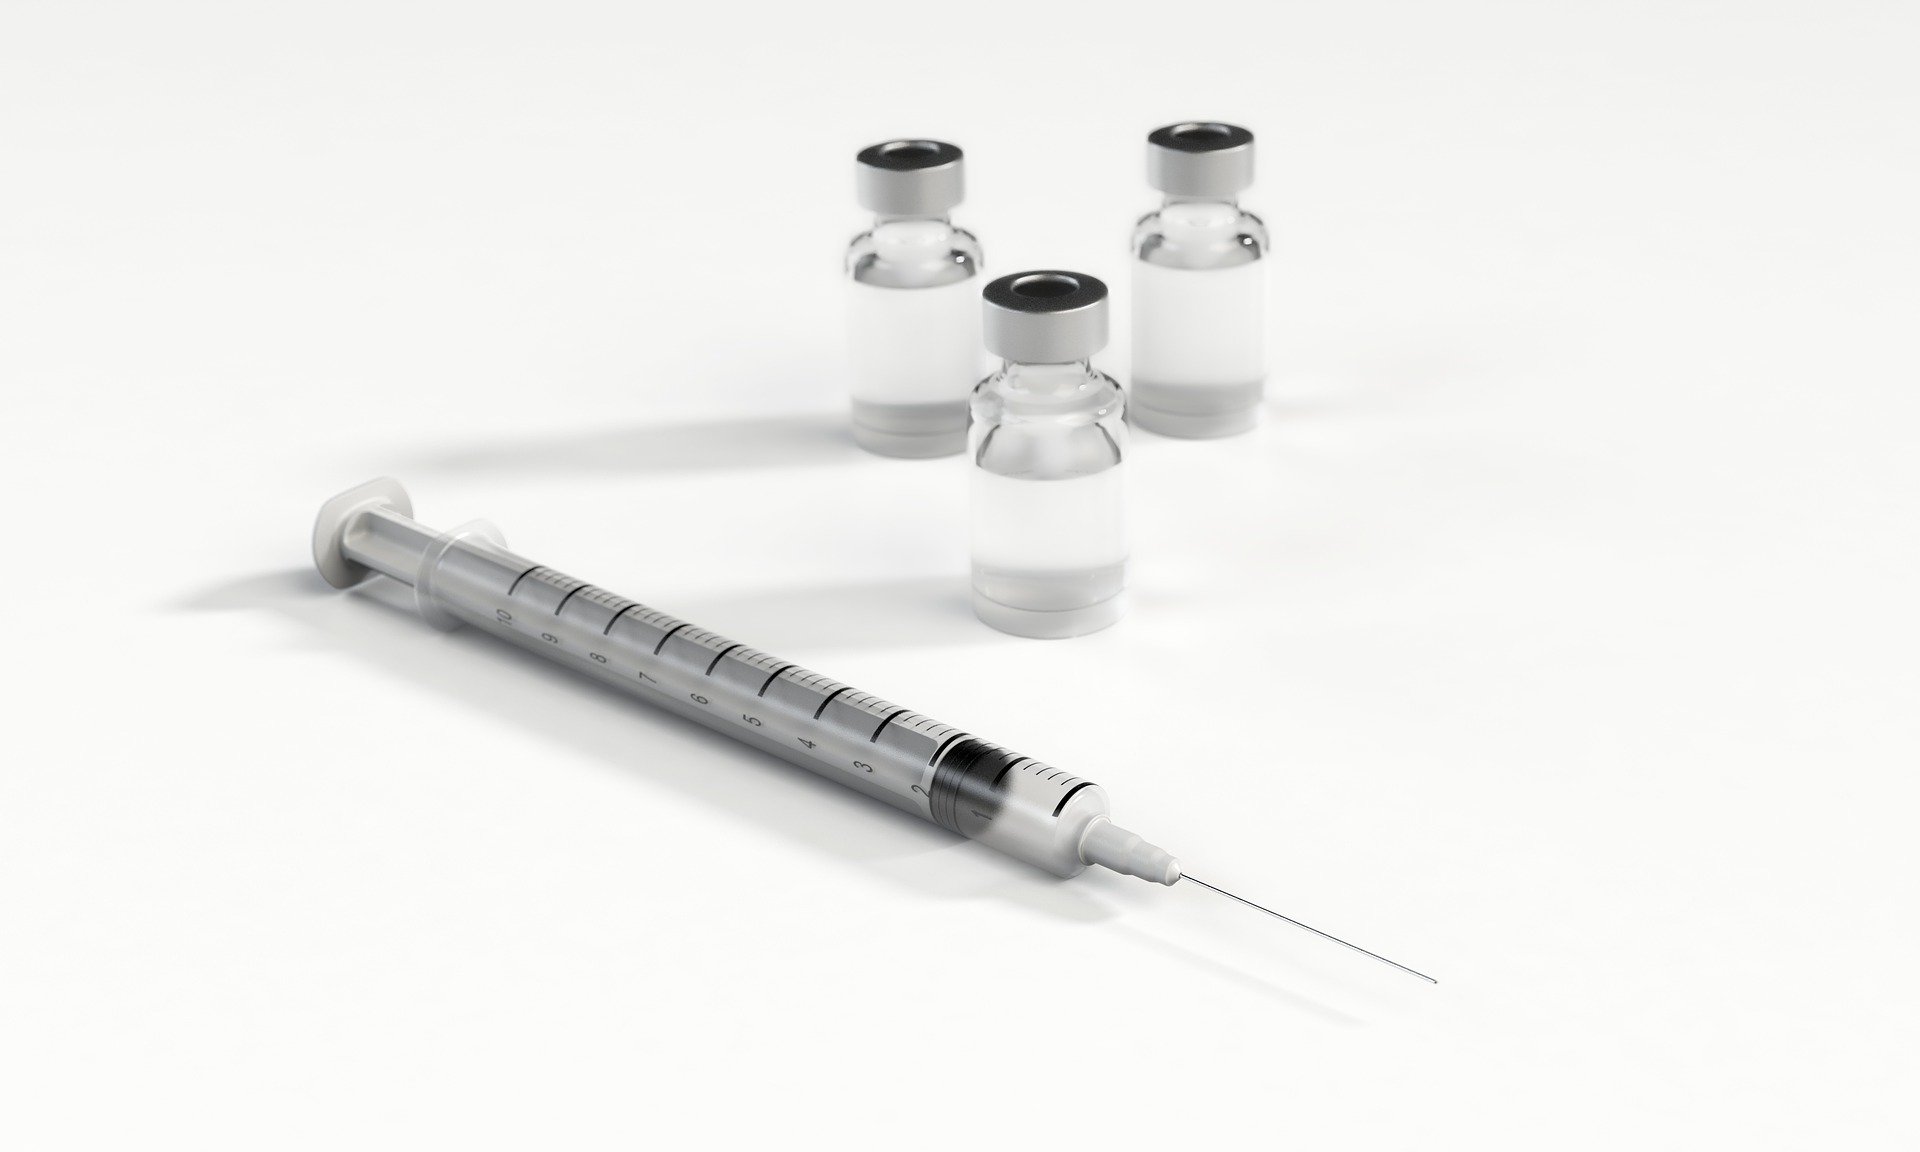 La baisse de livraison des vaccins n'aura ps de répercussions sur les secondes vaccinations programmée. Image par Arek Socha de Pixabay